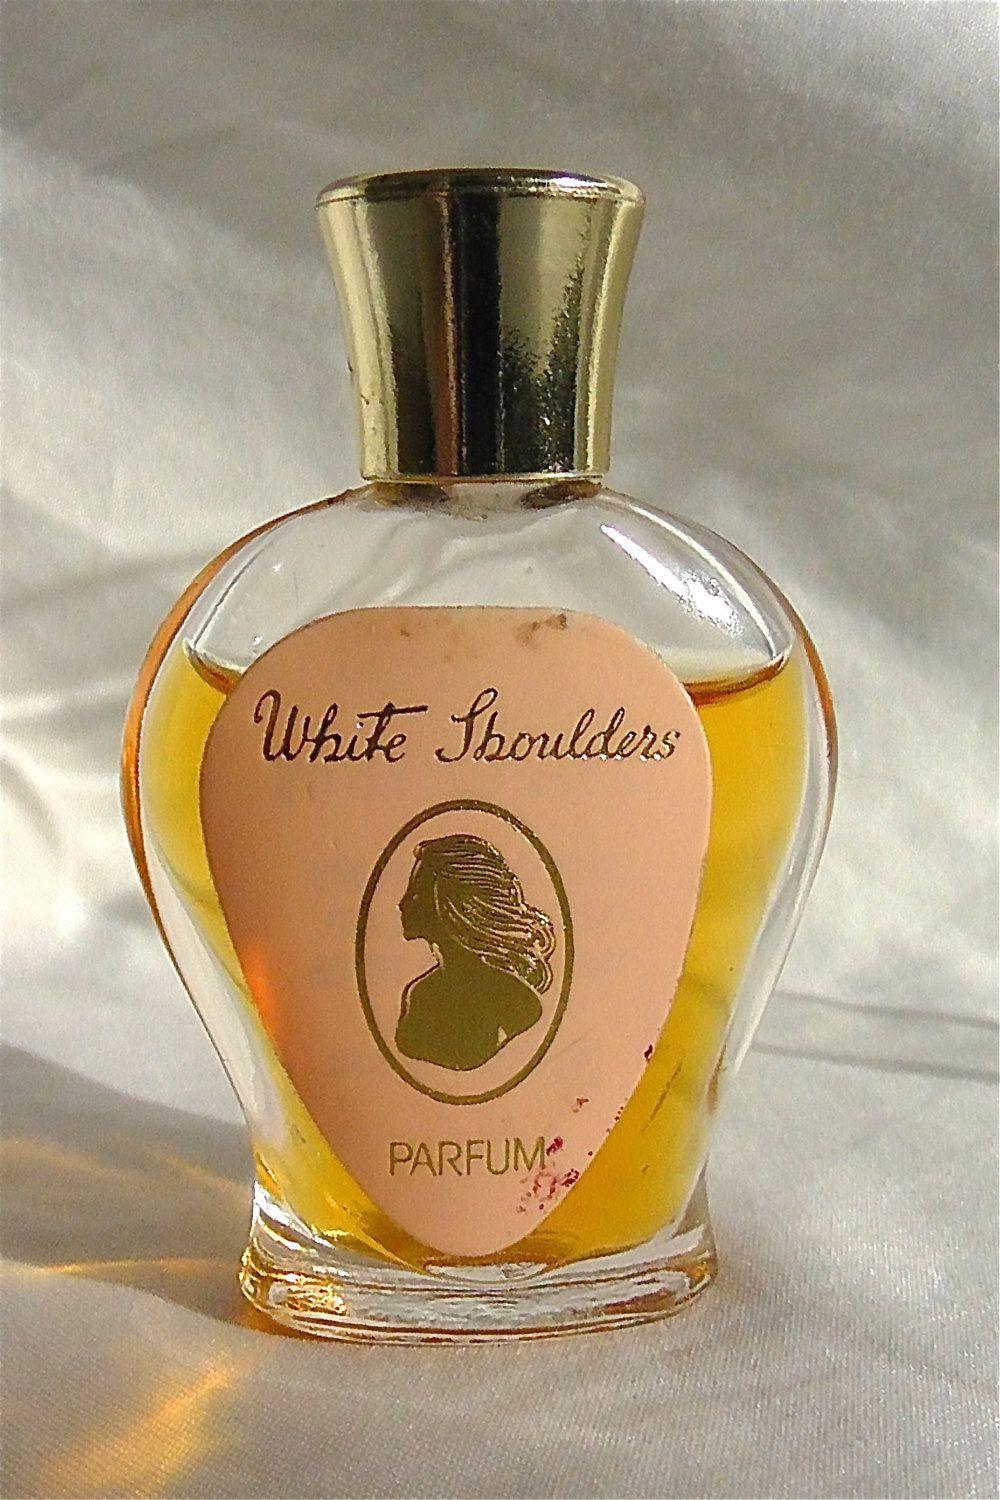 White Shoulders Perfume Logo - Vintage White Shoulders Parfum | White Shoulders | Pinterest | White ...